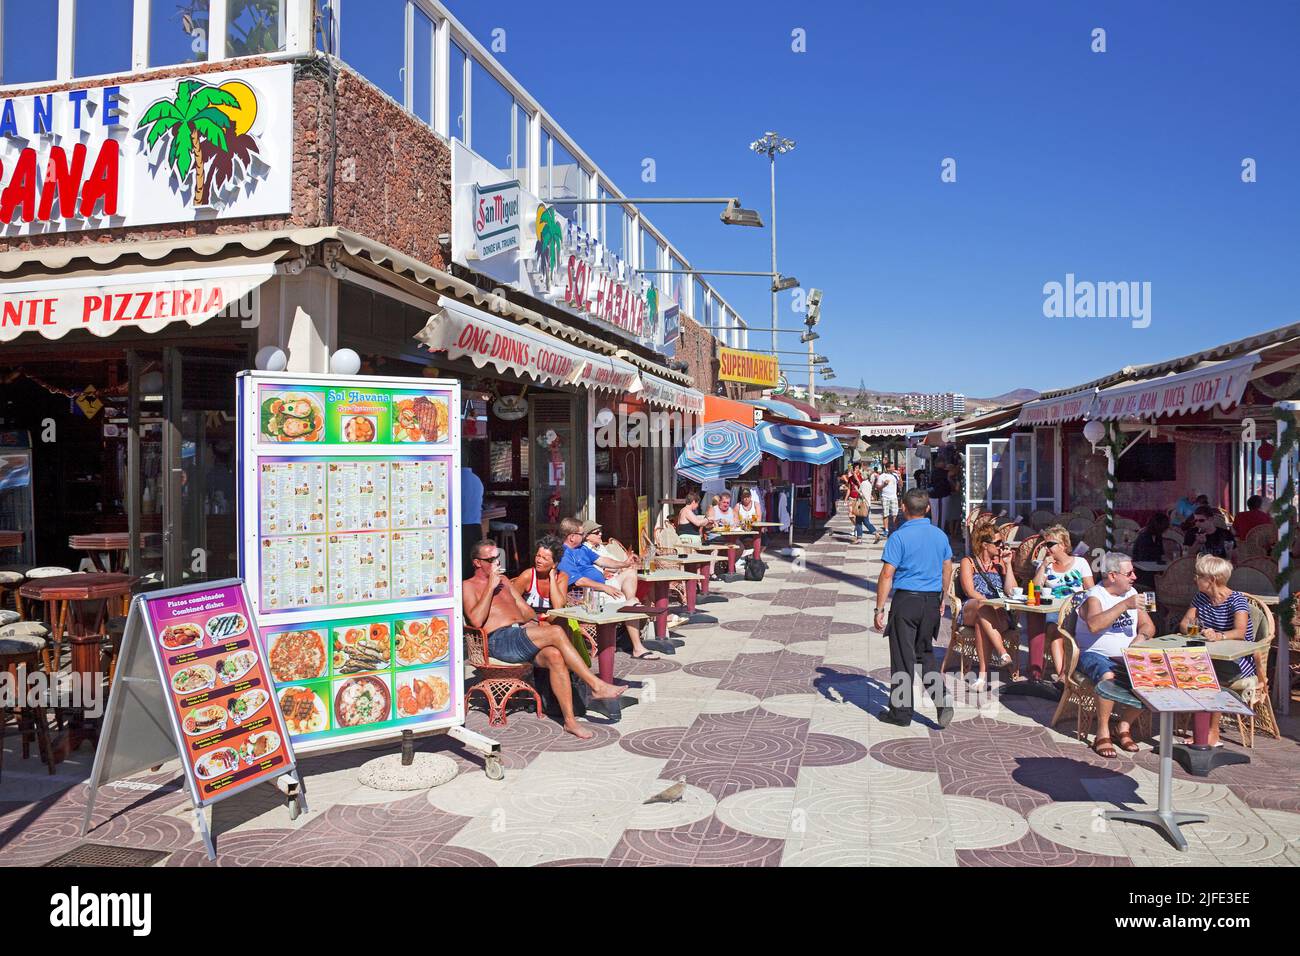 Shops, Bars und Restaurants an der Strandpromenade, Playa del Ingles, Gran Canaria, Kanarische Inseln, Spanien, Europa | Shops, bars and restaurants a Stock Photo